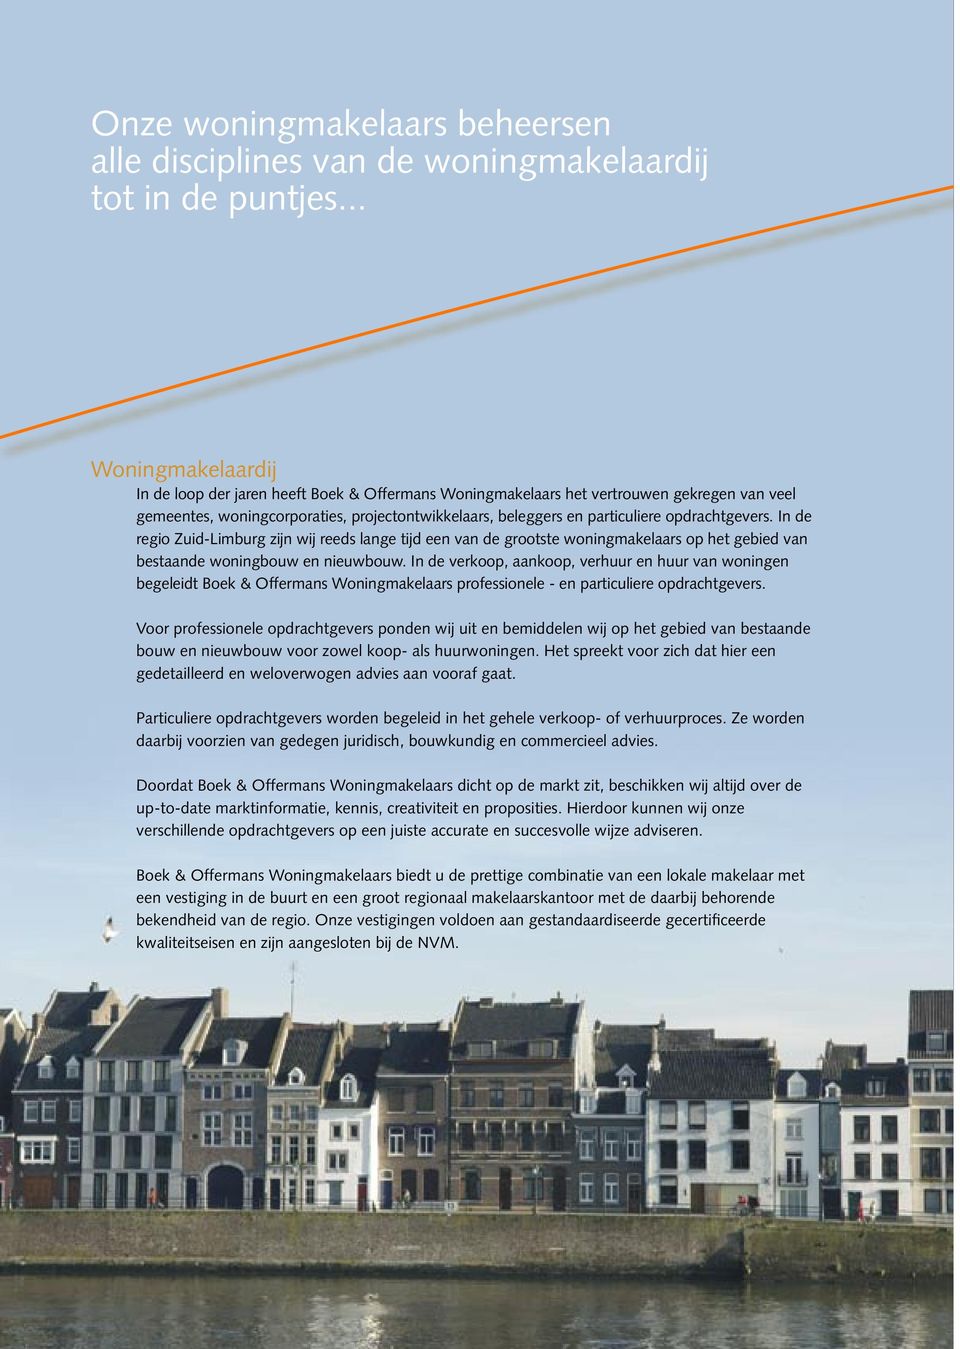 opdrachtgevers. In de regio Zuid-Limburg zijn wij reeds lange tijd een van de grootste woningmakelaars op het gebied van bestaande woningbouw en nieuwbouw.